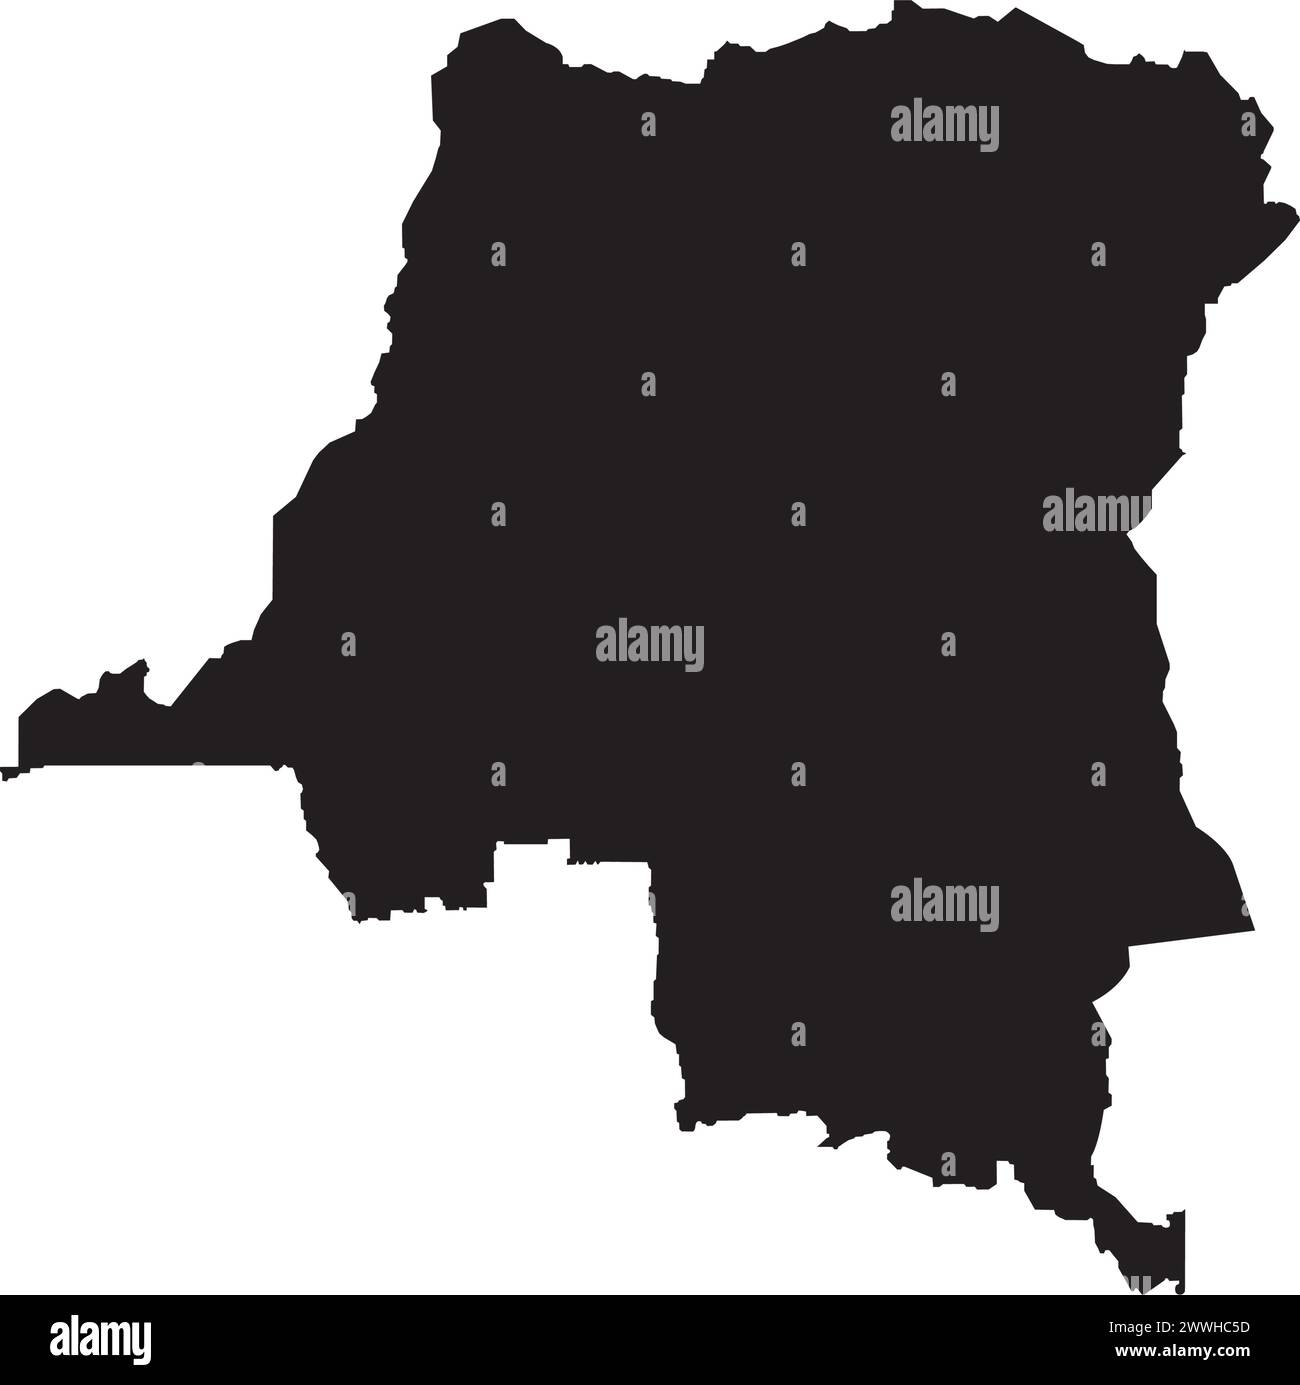 Conception d'illustration vectorielle d'icône de carte de la République démocratique du Congo Illustration de Vecteur